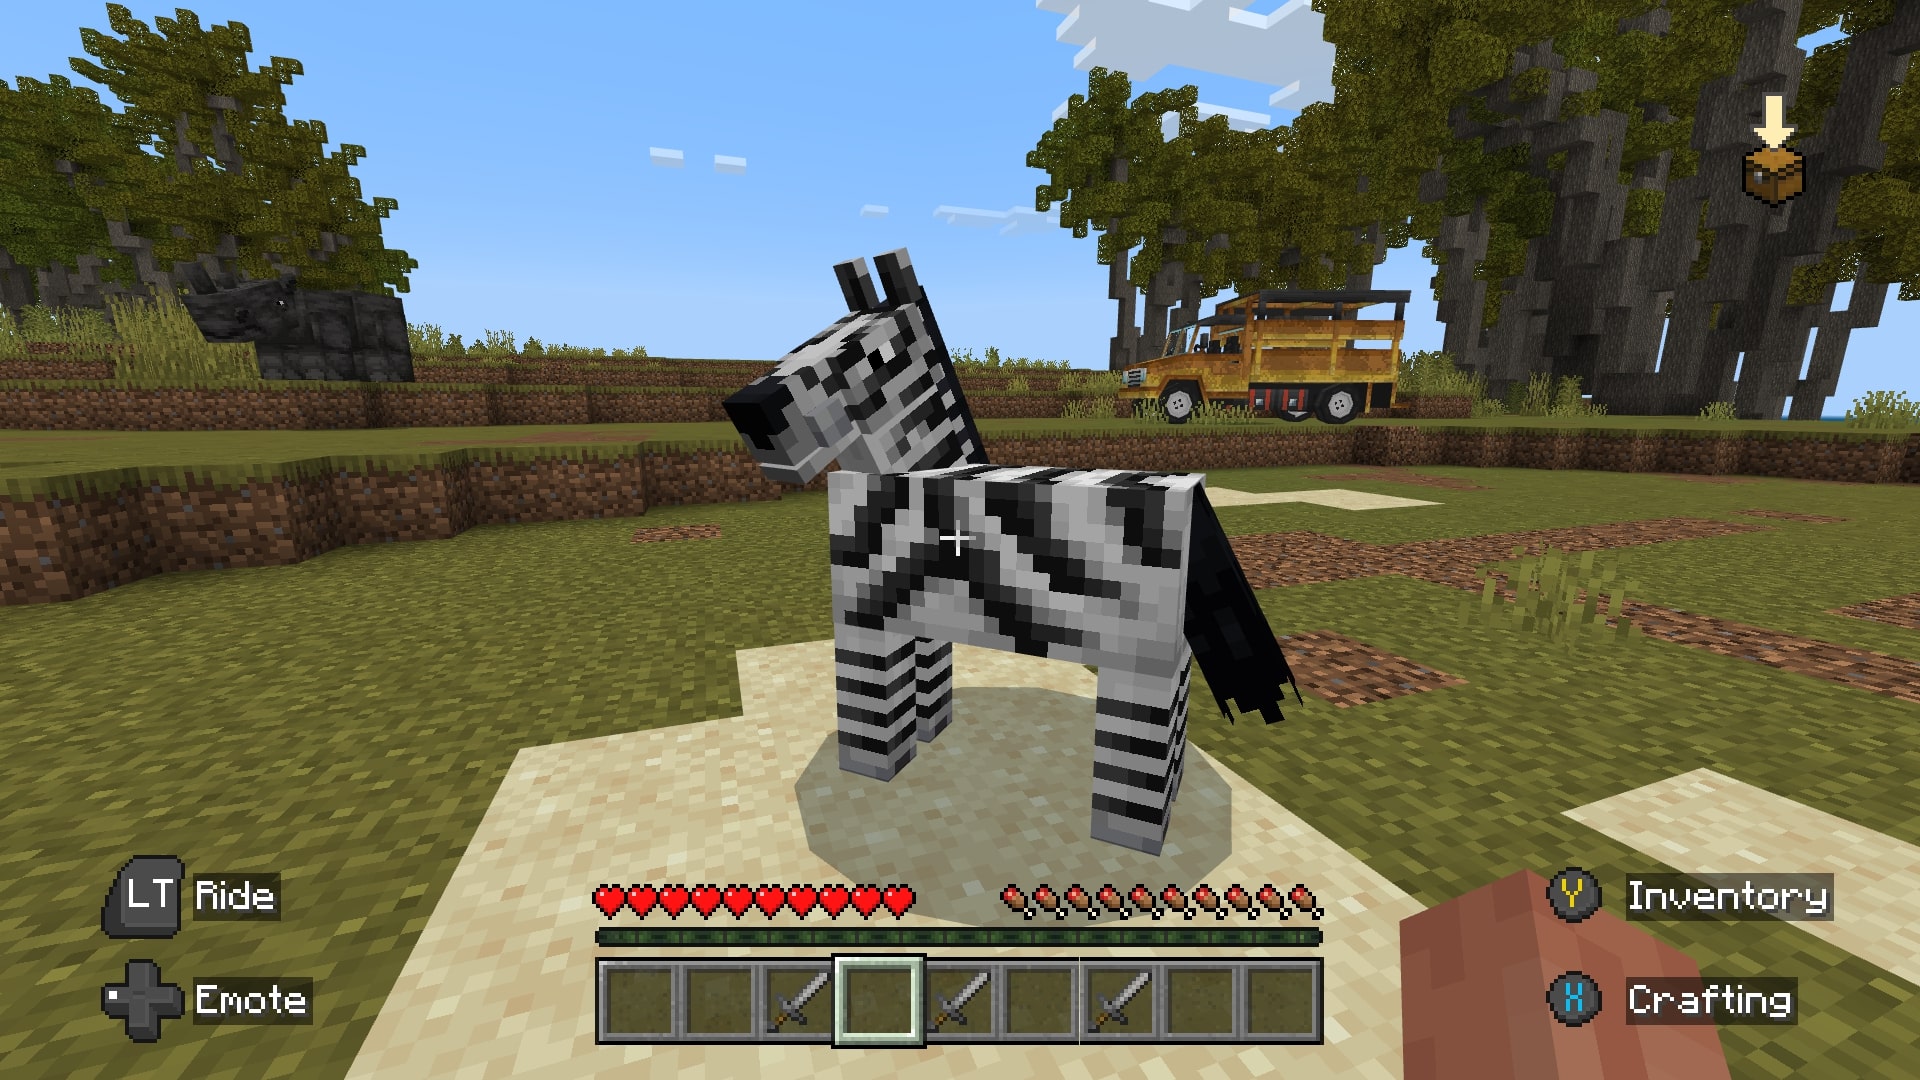 A screenshot of a zebra in Minecraft.